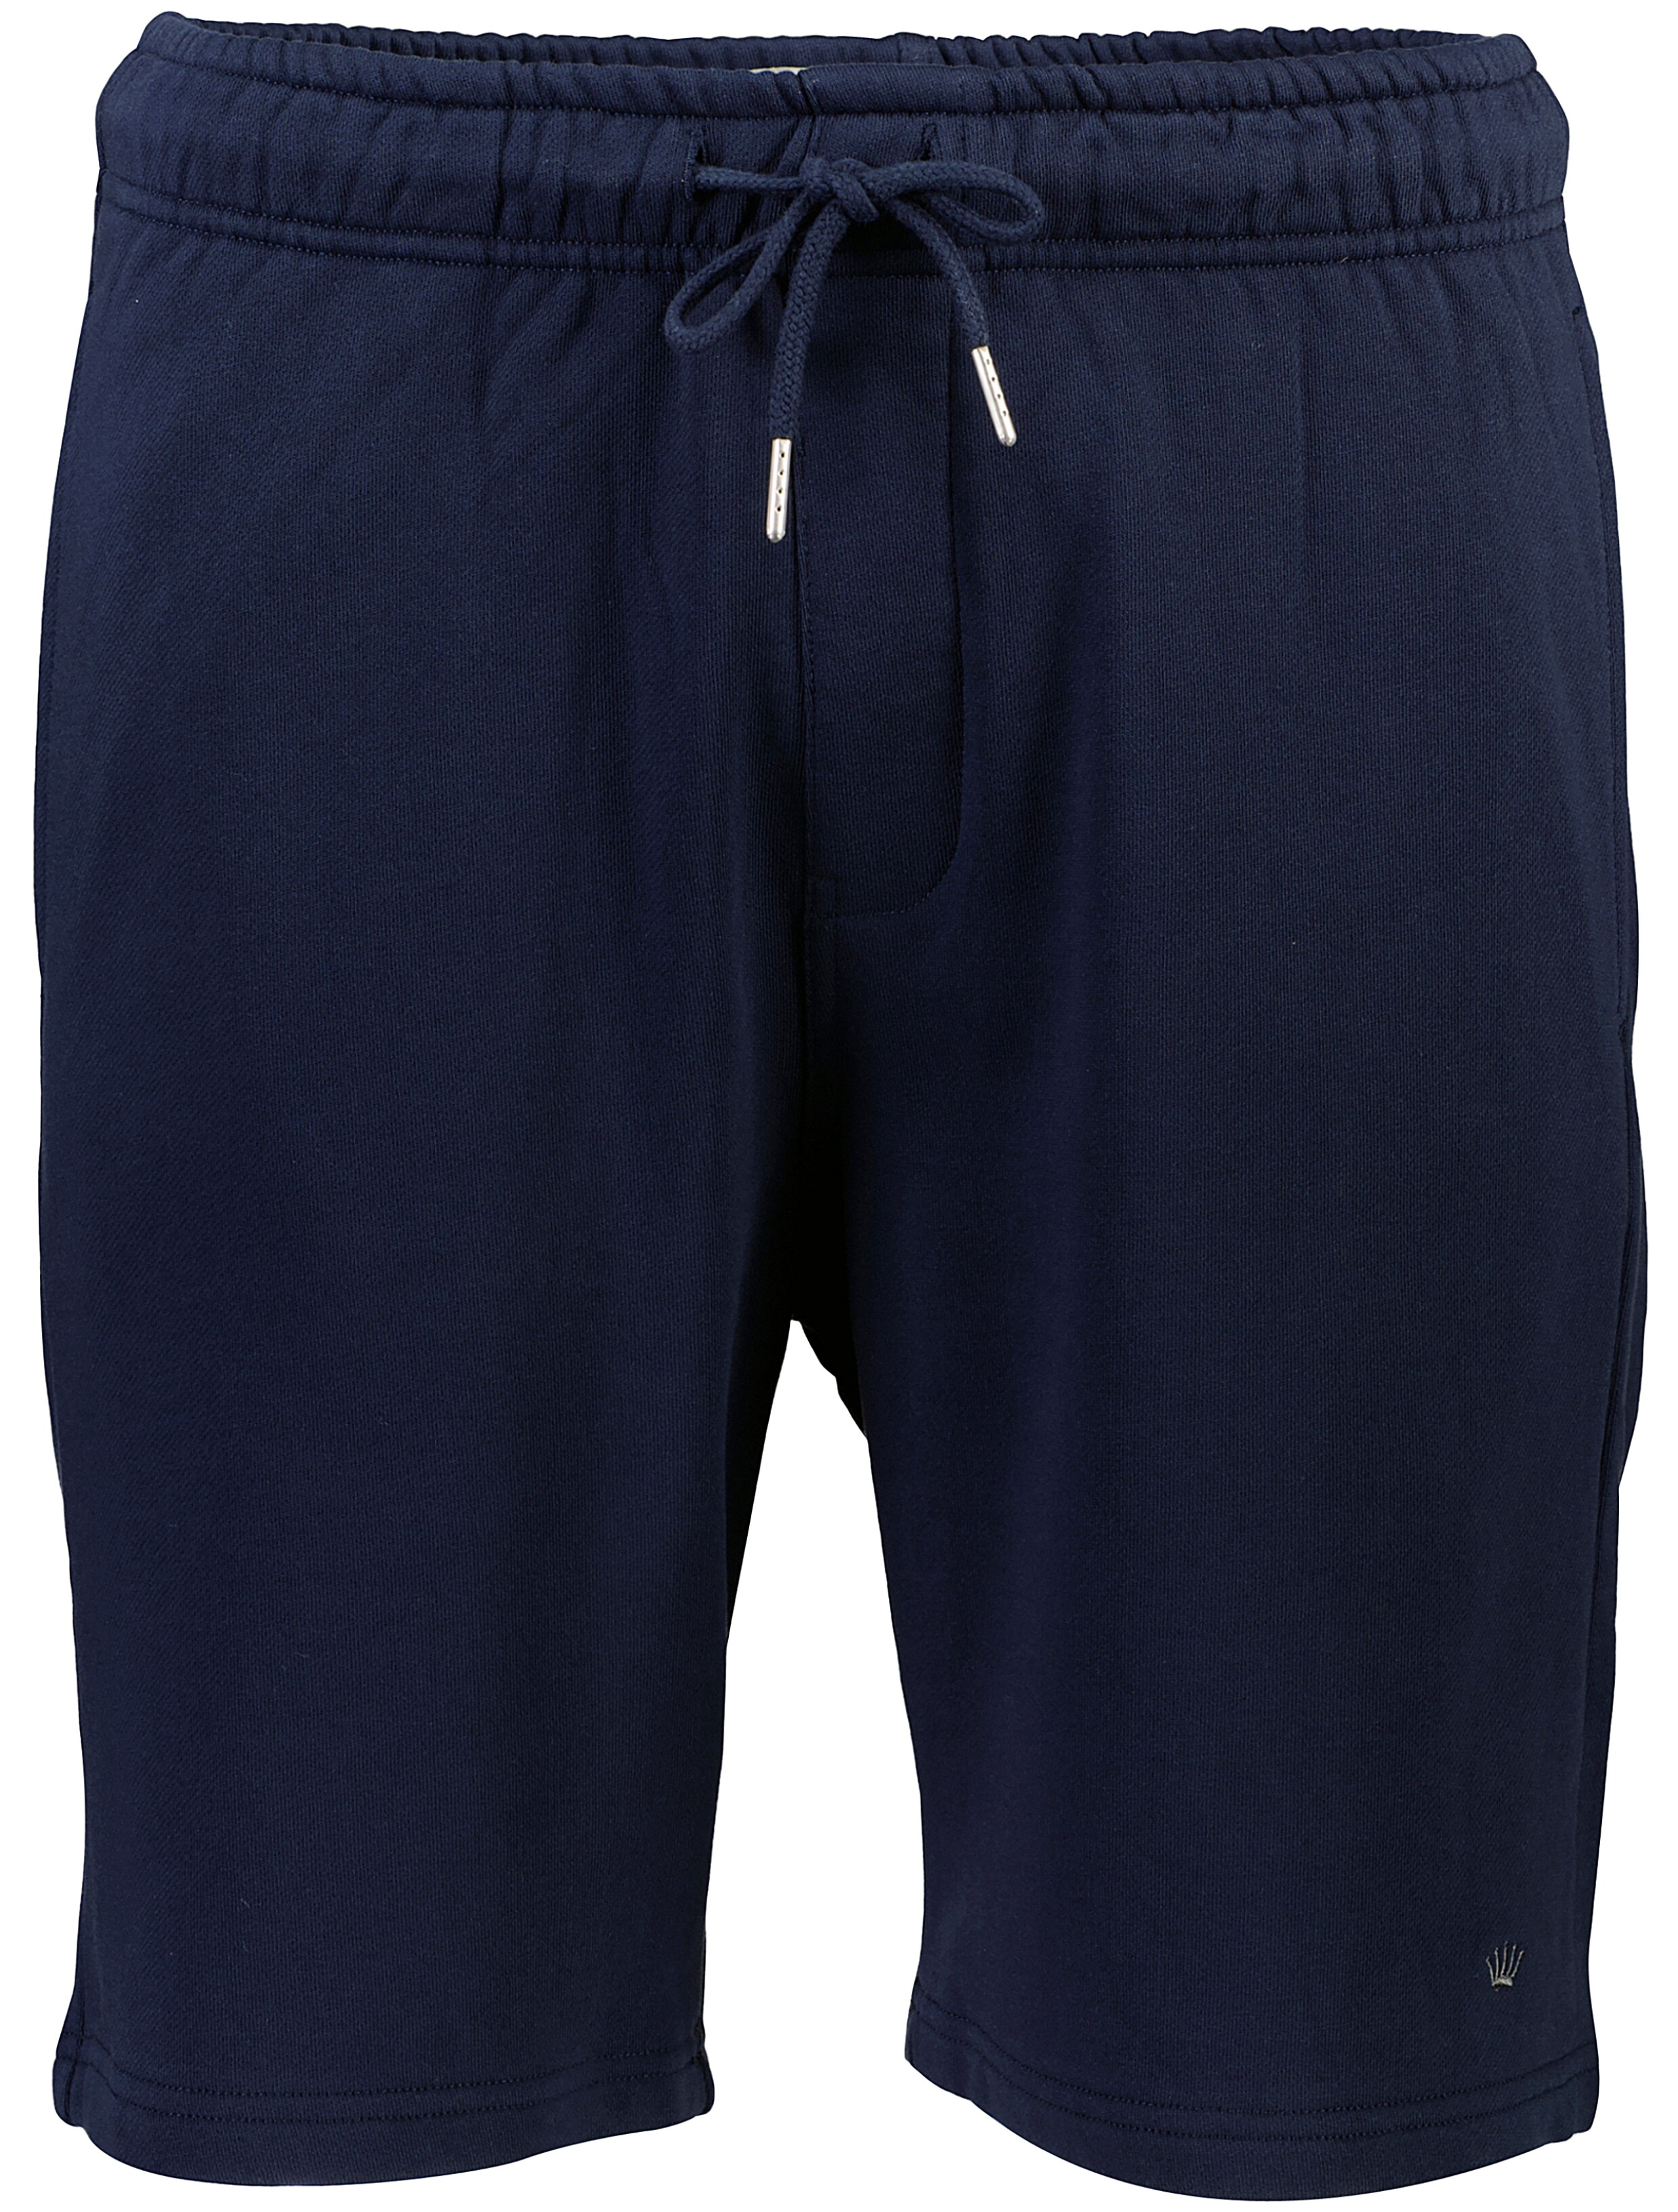 Junk de Luxe Casual shorts blå / navy